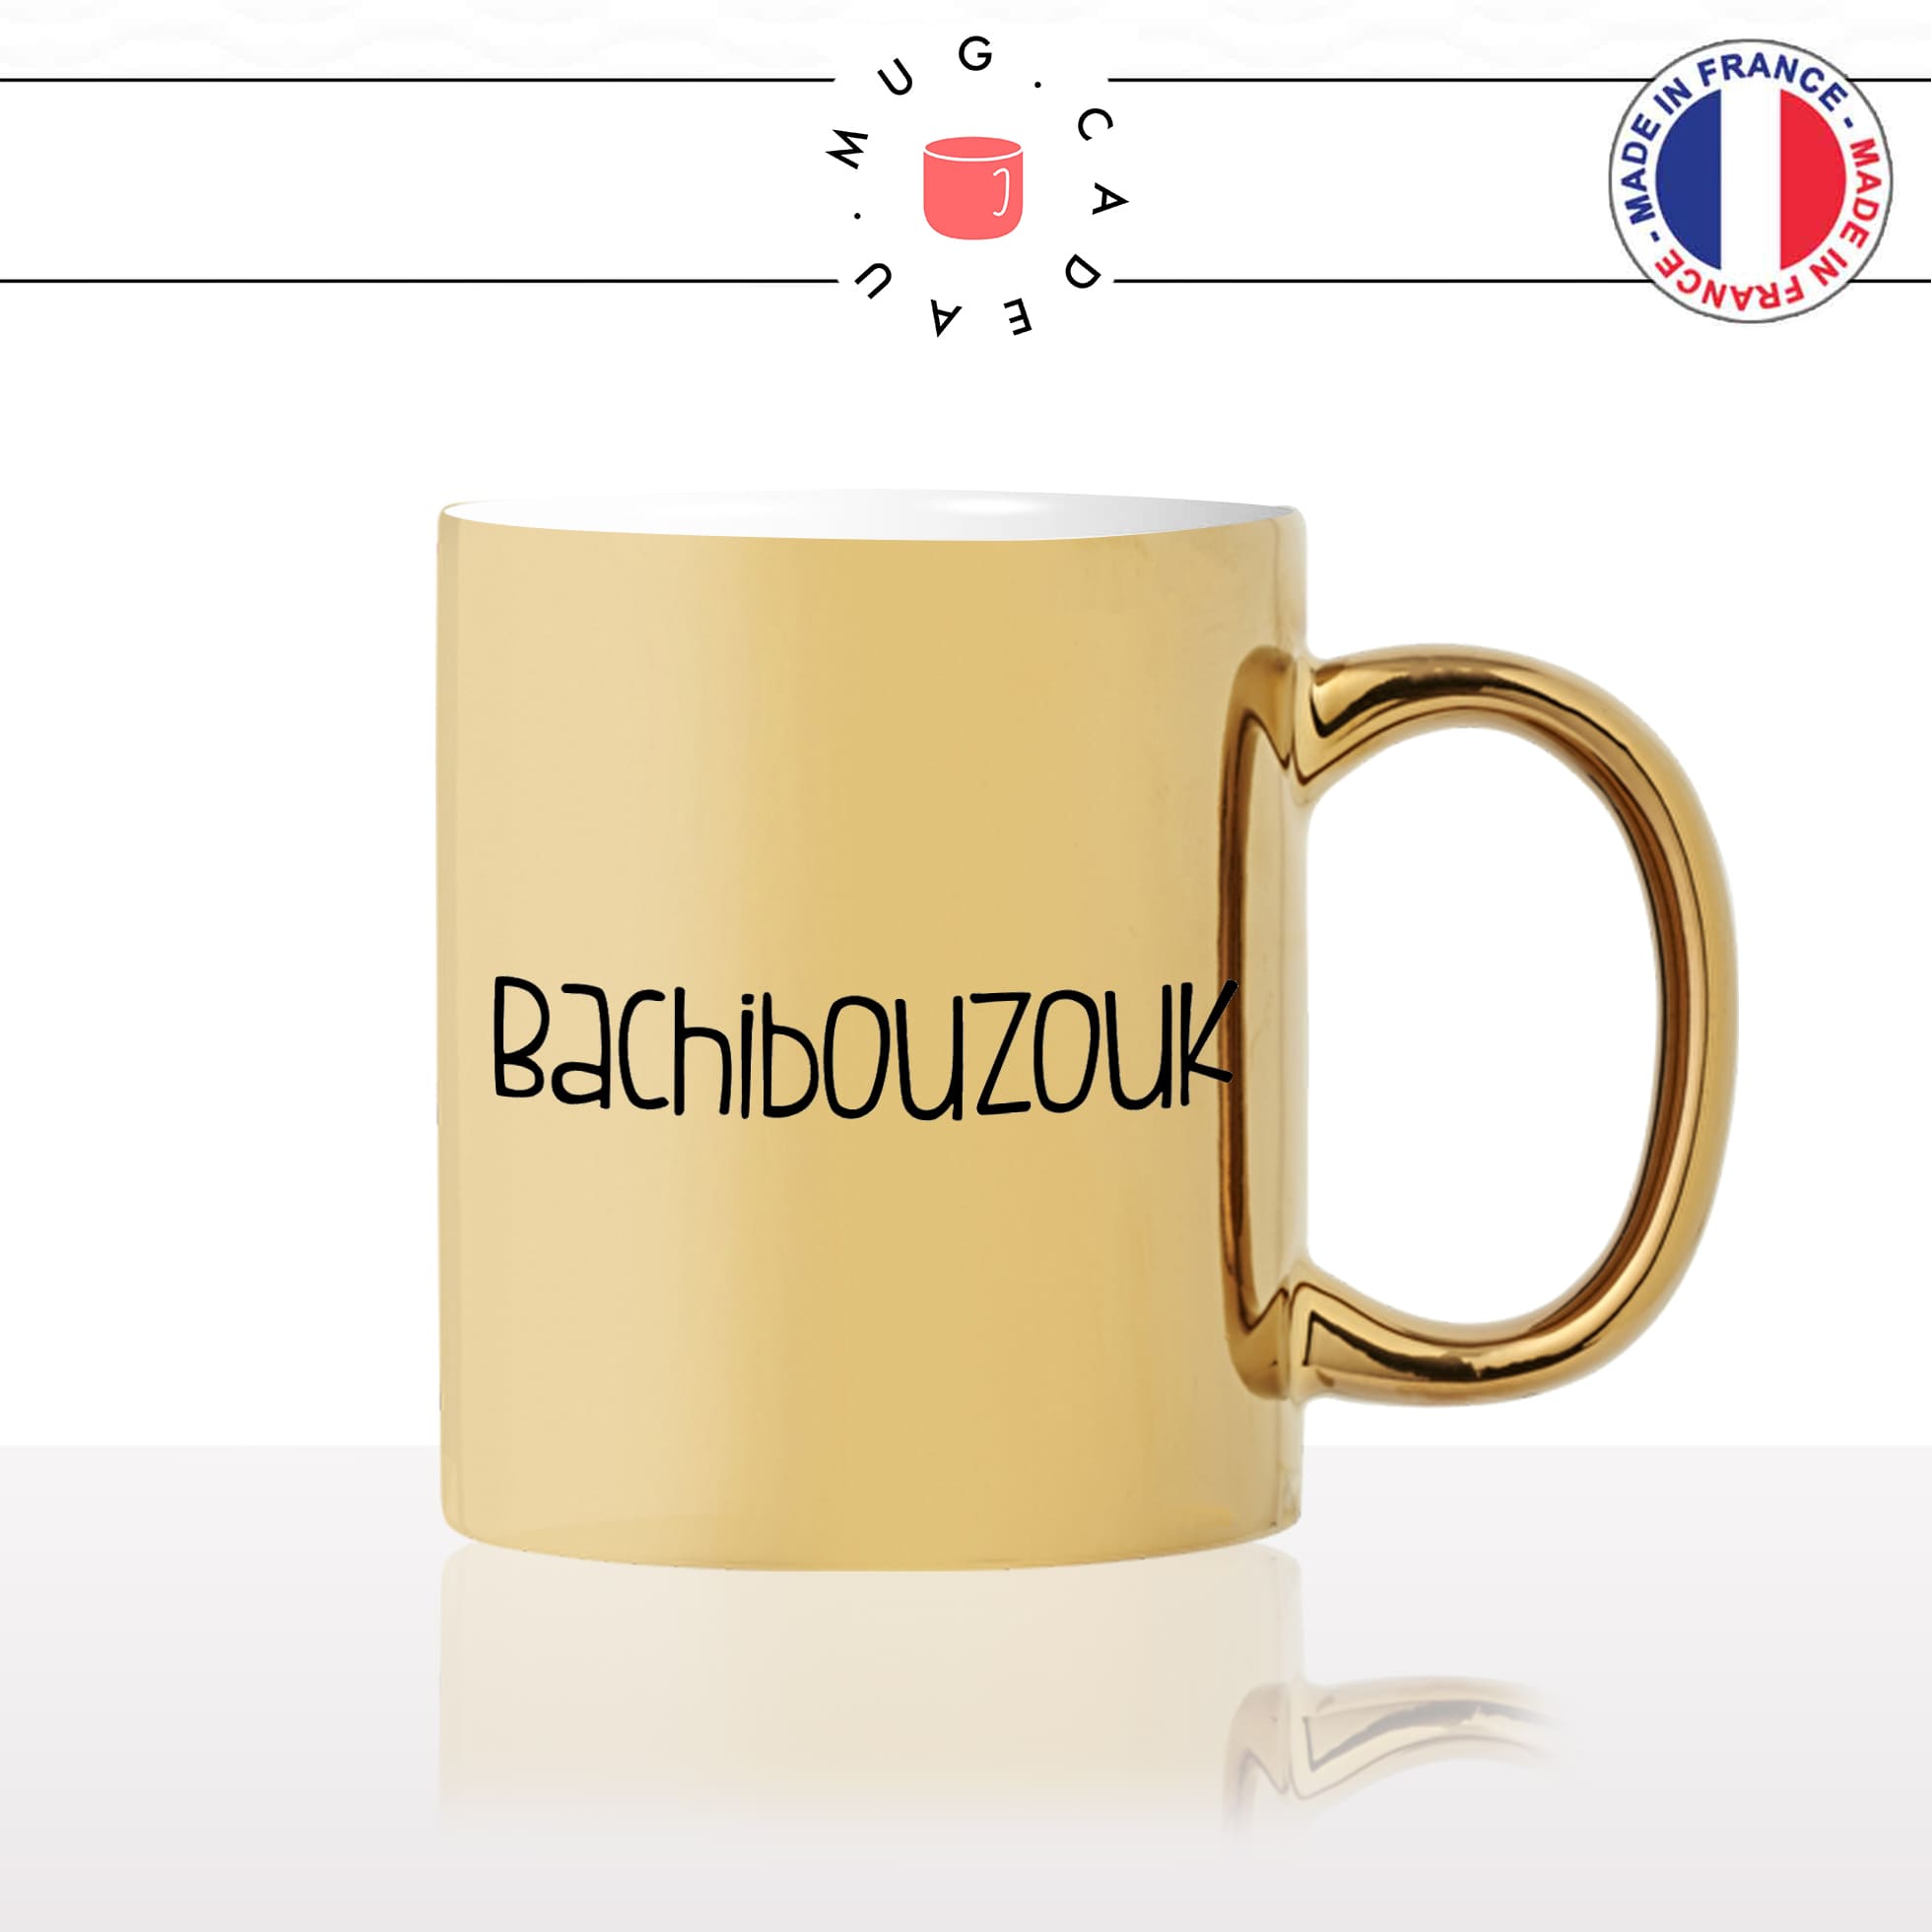 mug-tasse-or-doré-gold-unique-bachibouzouk-tintin-capitaine-hadock-homme-femme-humour-fun-cool-idée-cadeau-original-personnalisé2